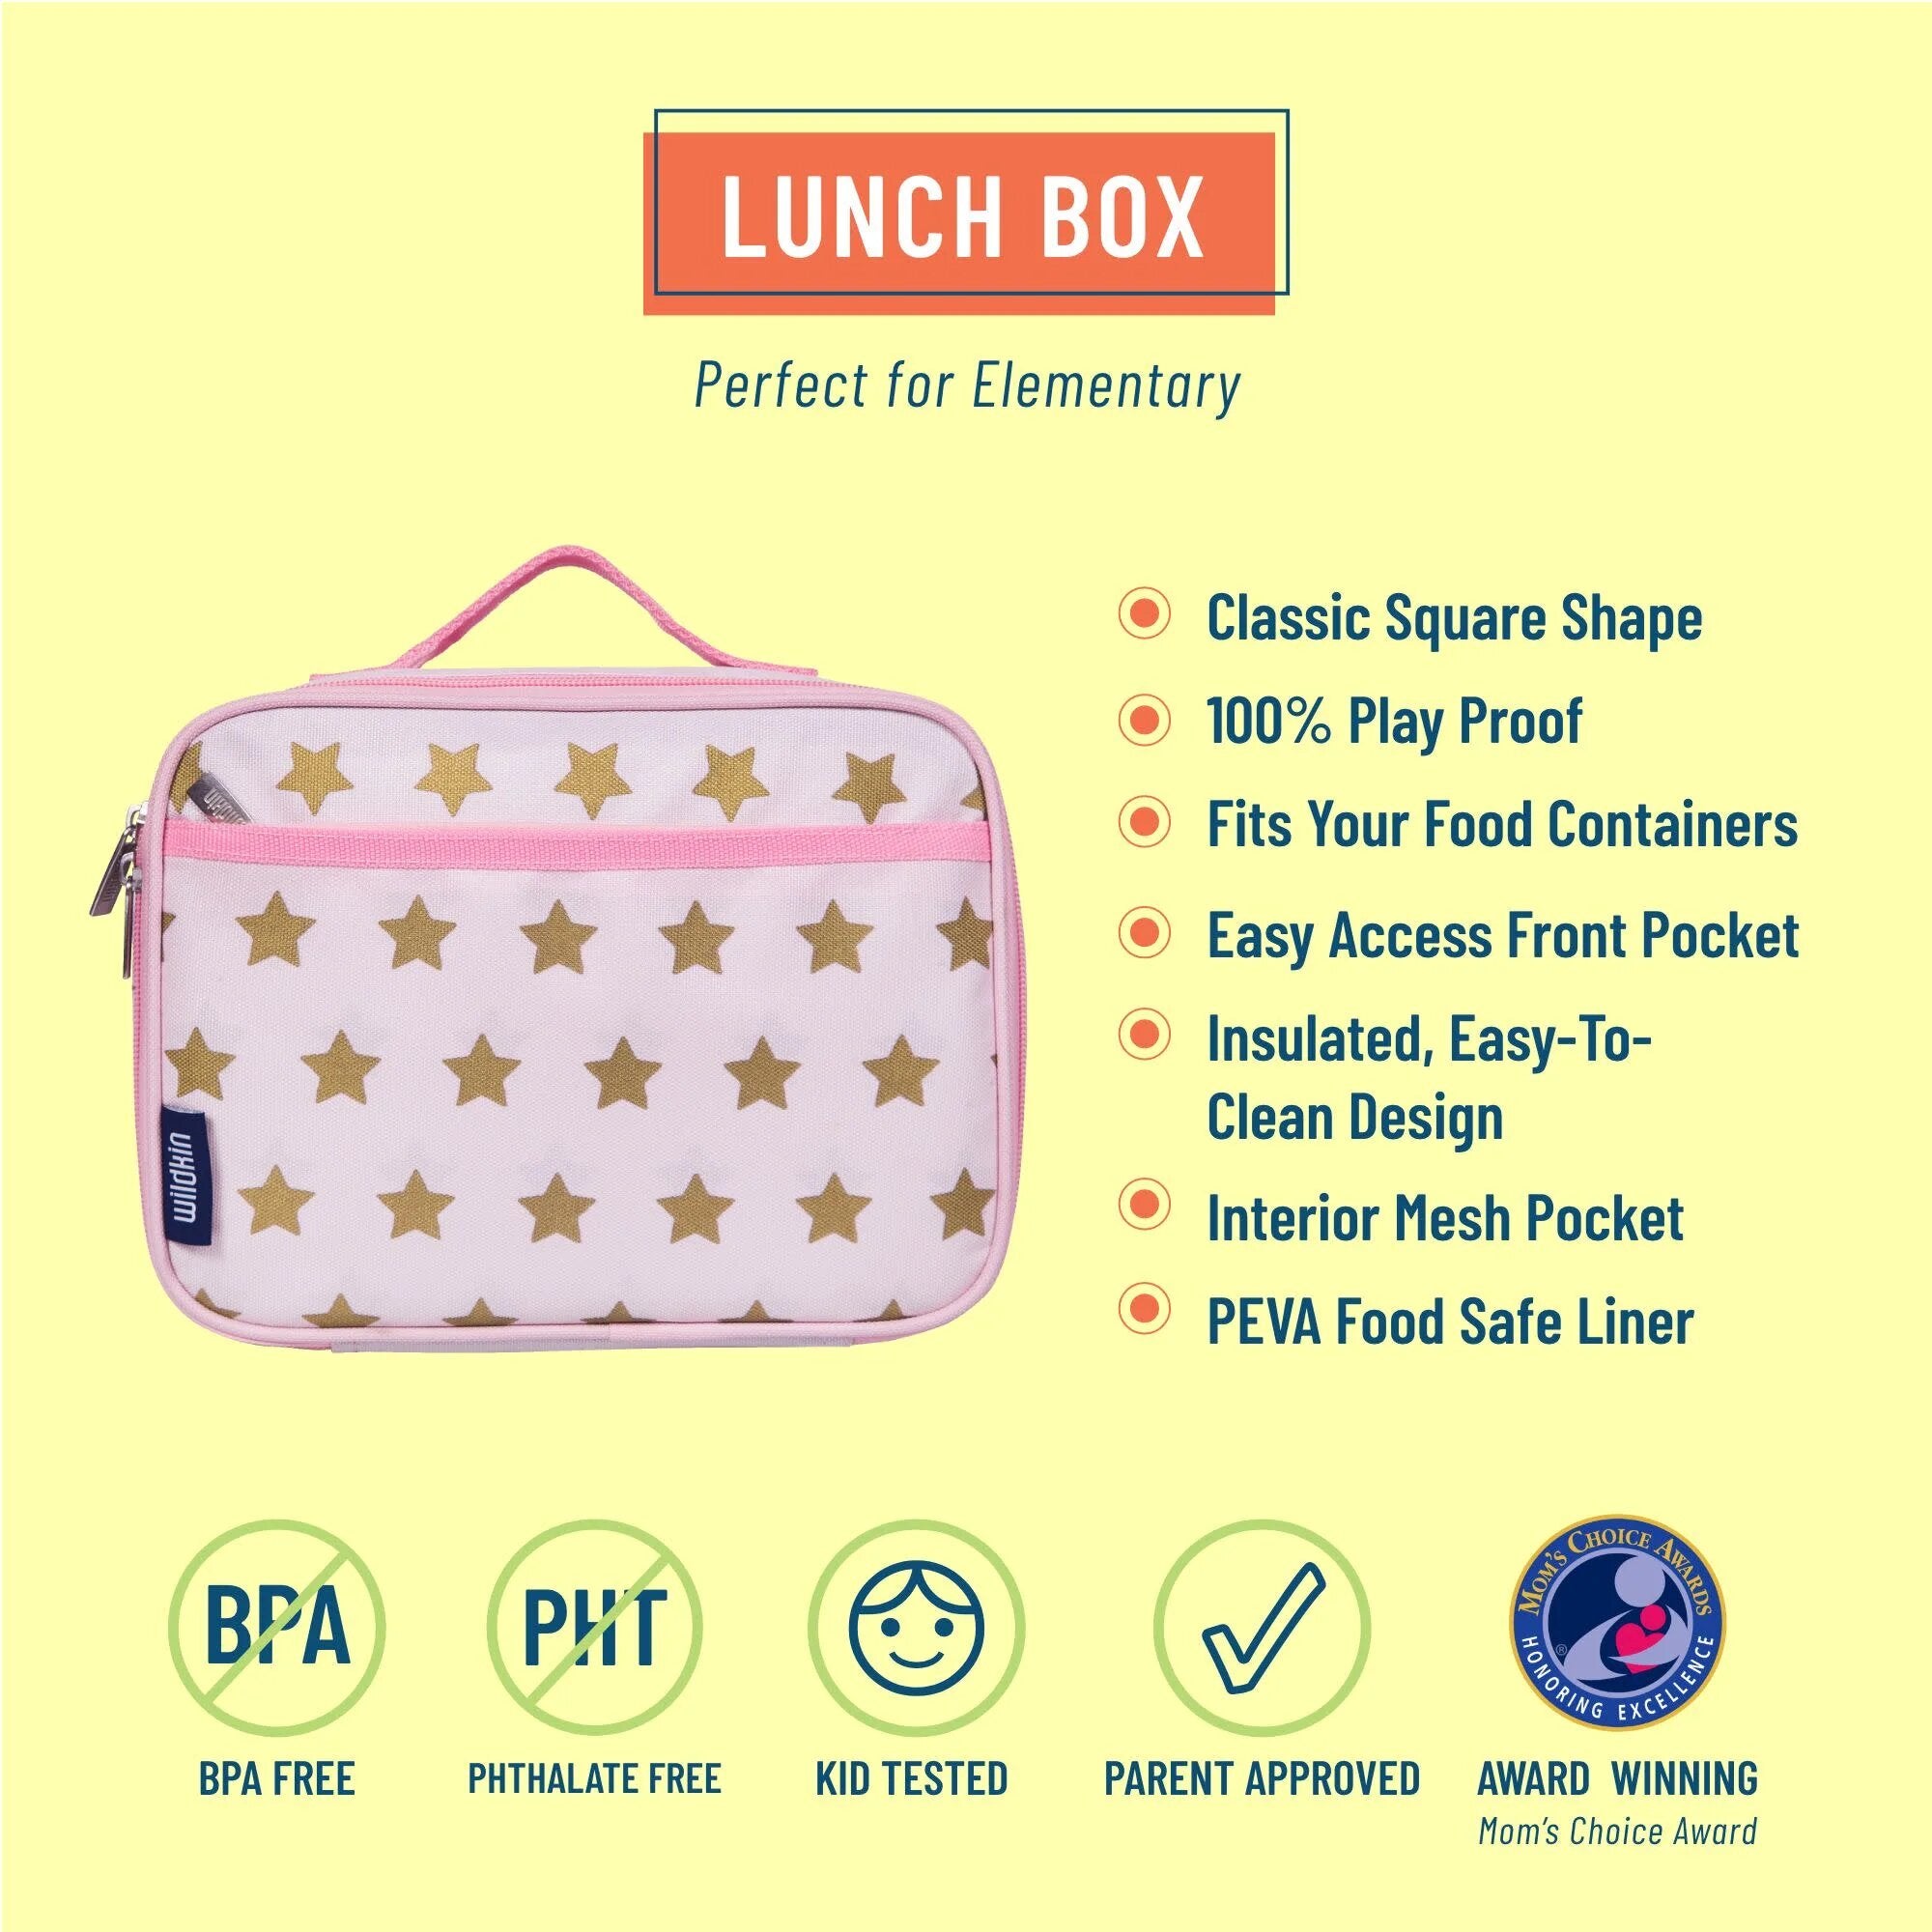 Wildkin Pink Glitter Lunch Box